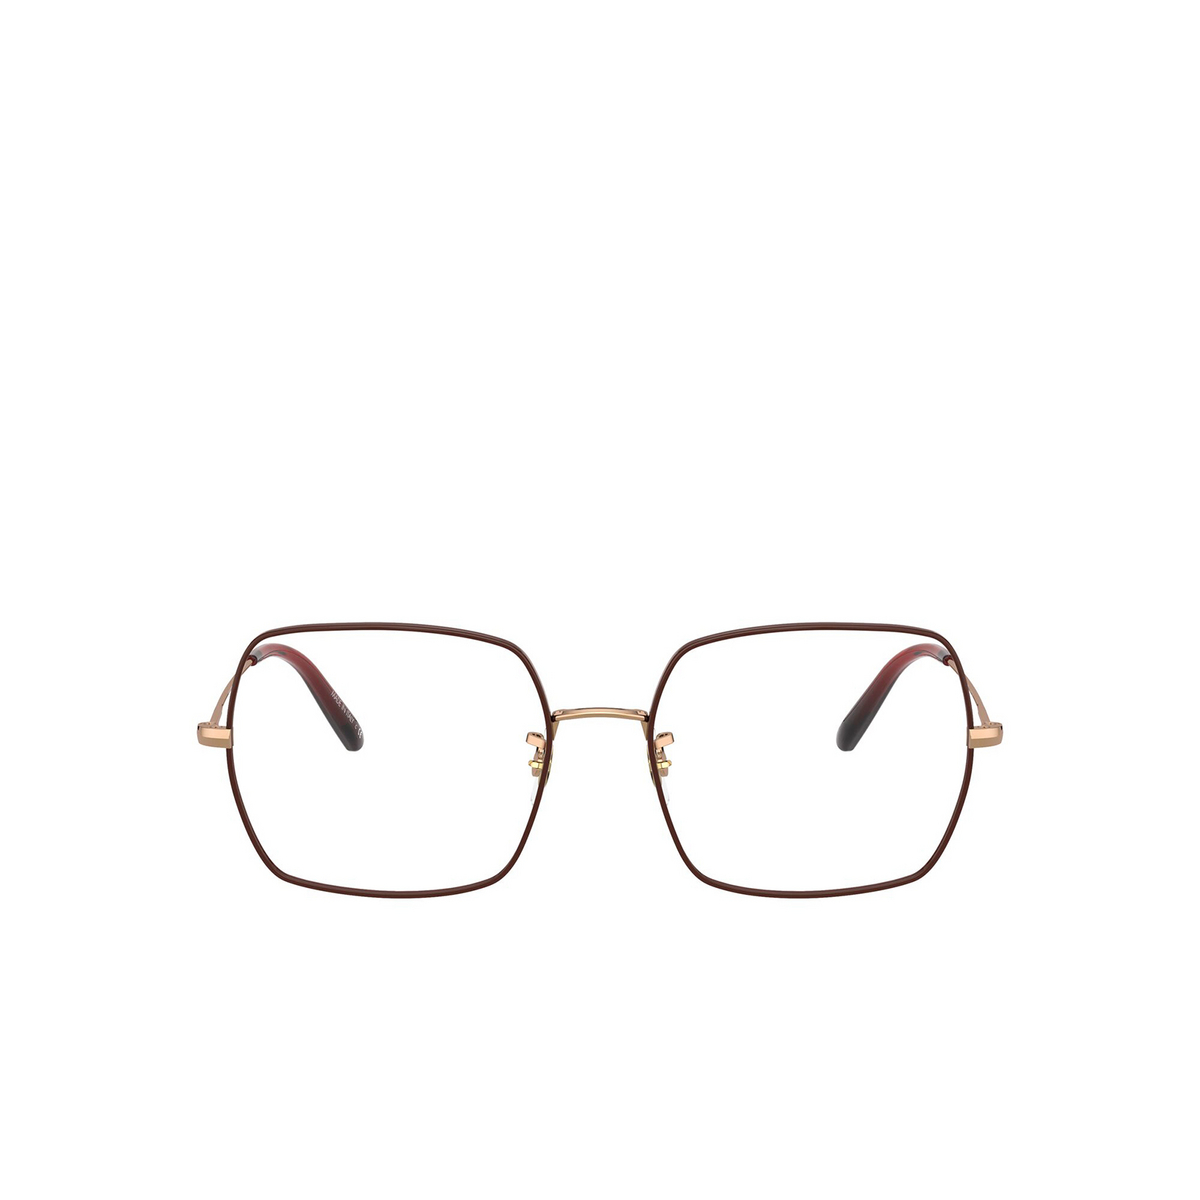 Oliver Peoples® Irregular Eyeglasses: Justyna OV1279 color Rose Gold / Burgundy 5037 - 1/3.